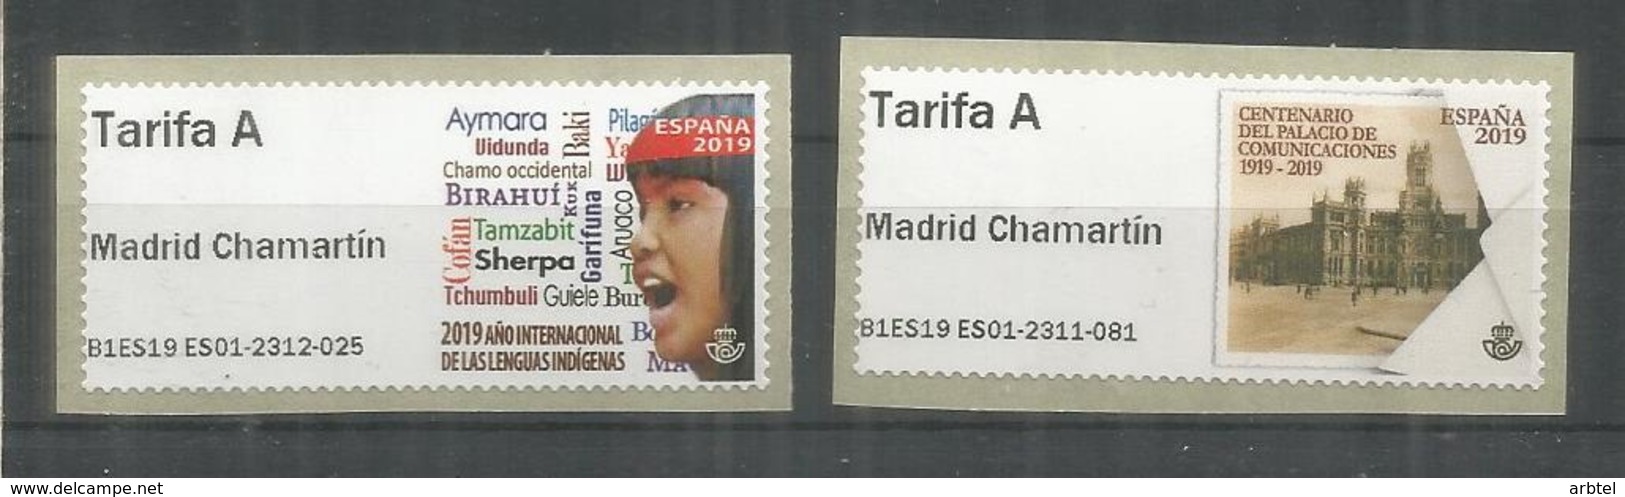 ESPAÑA SPAIN ATM MADRID CHAMARTIN 2019 PALACIO COMUNICACIONES IDIOMAS INDIGENAS TARIFA A - Nuevos